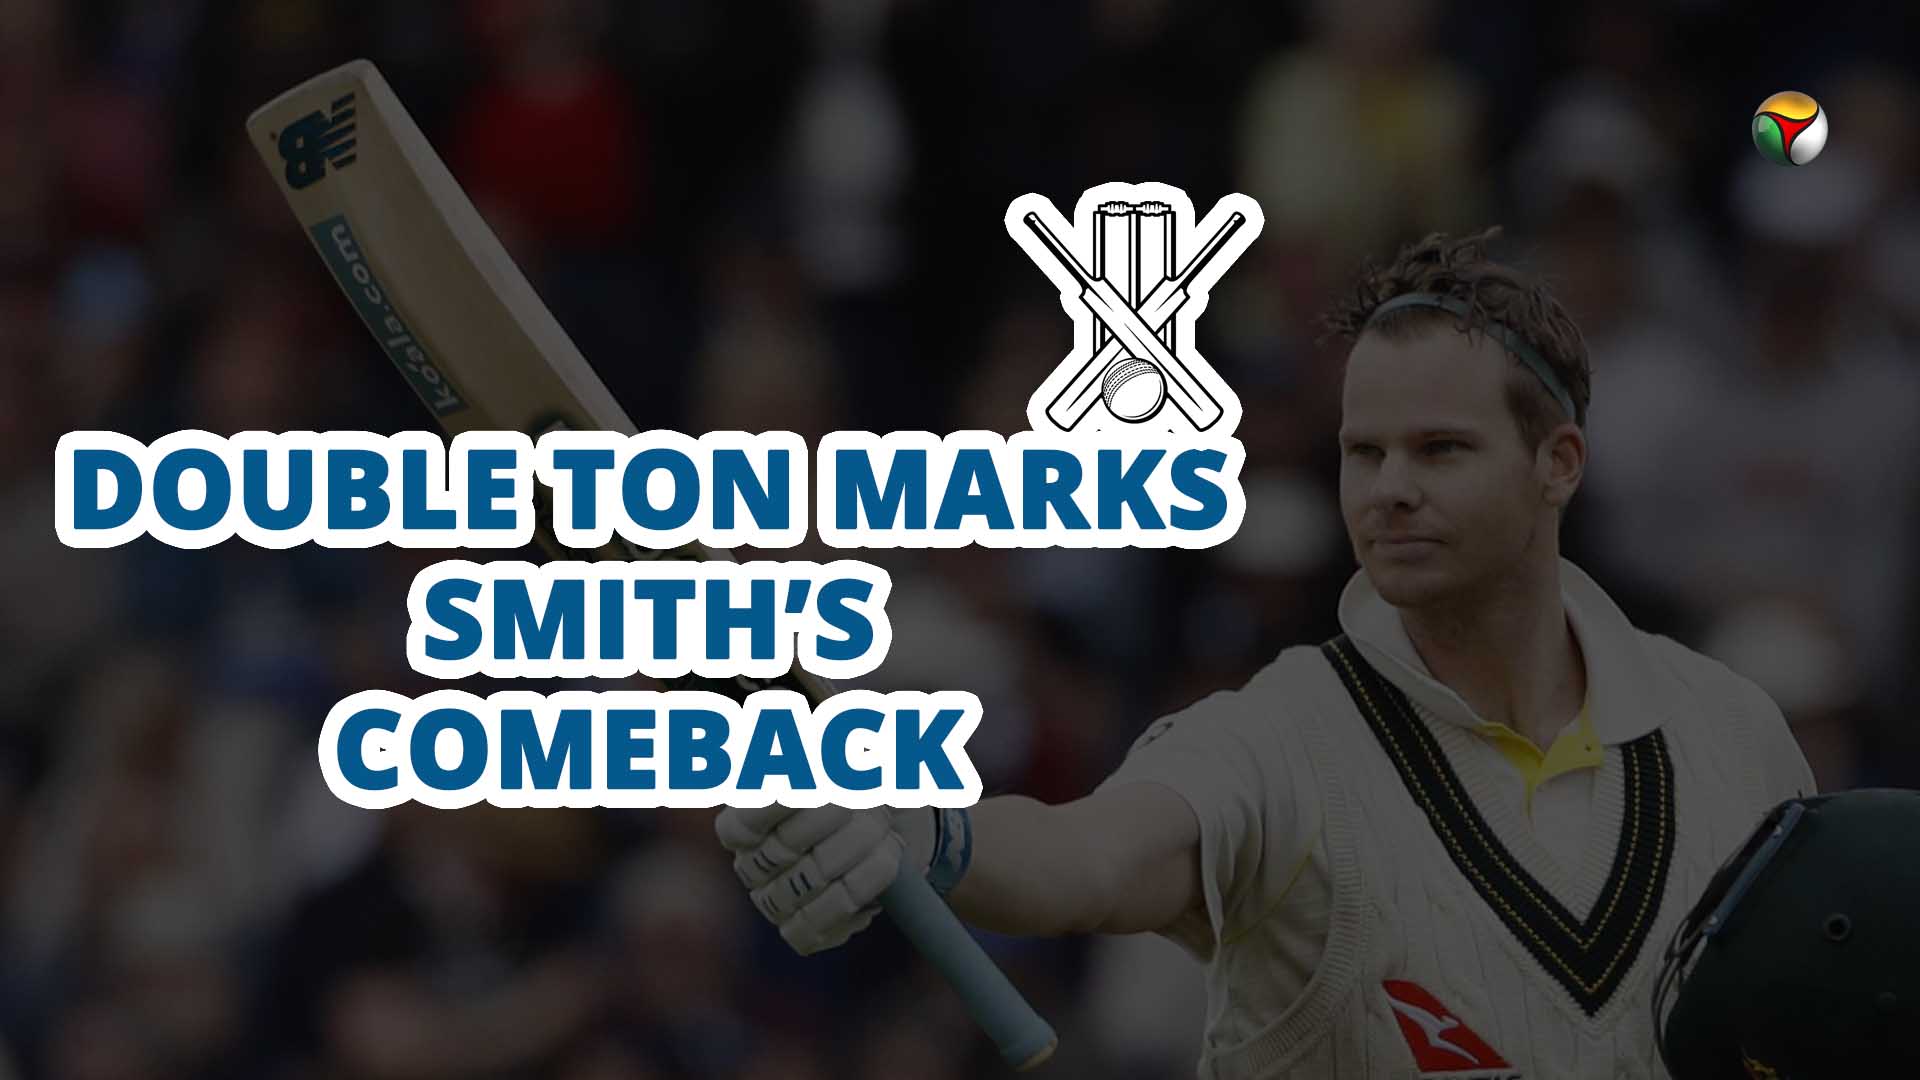 Steve Smith, Cricket, Australia, England, Ashes test, Ashes series, double ton